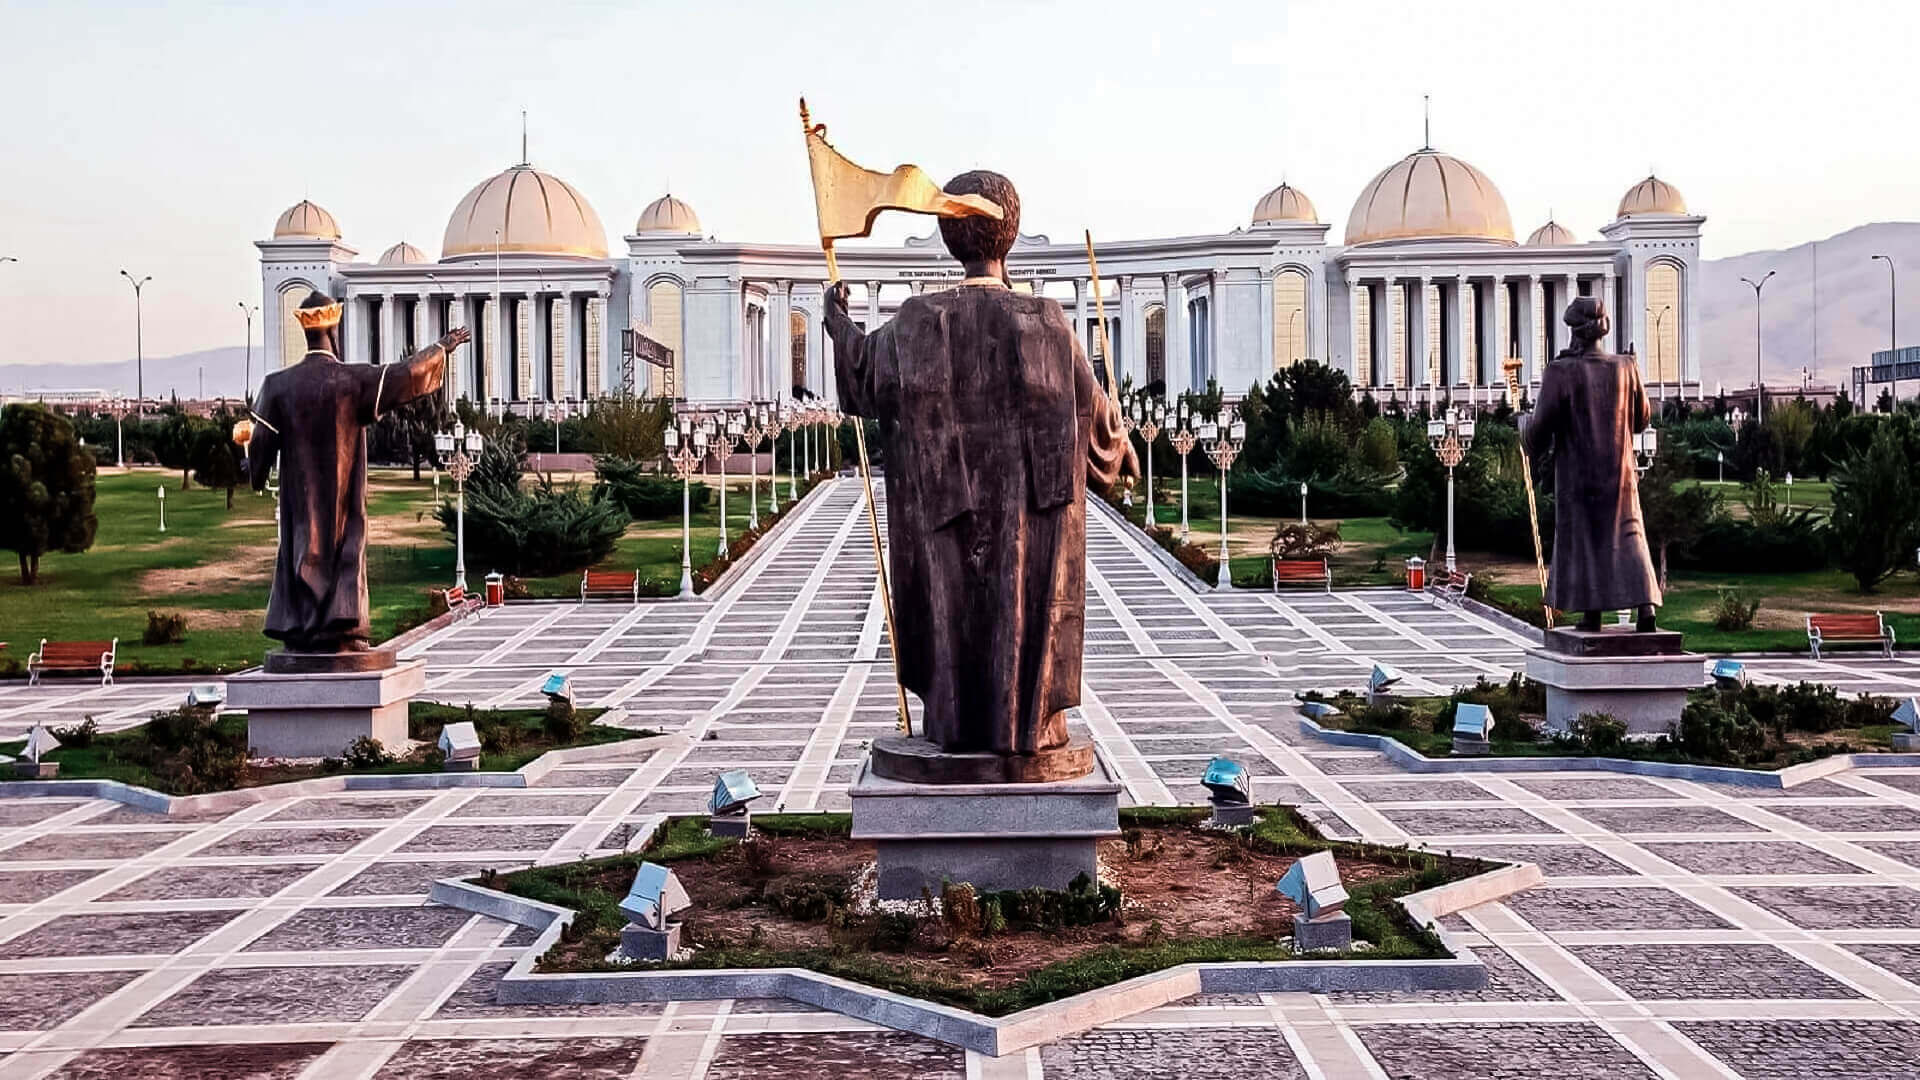 Turkmenistan travel guide - Travel S helper